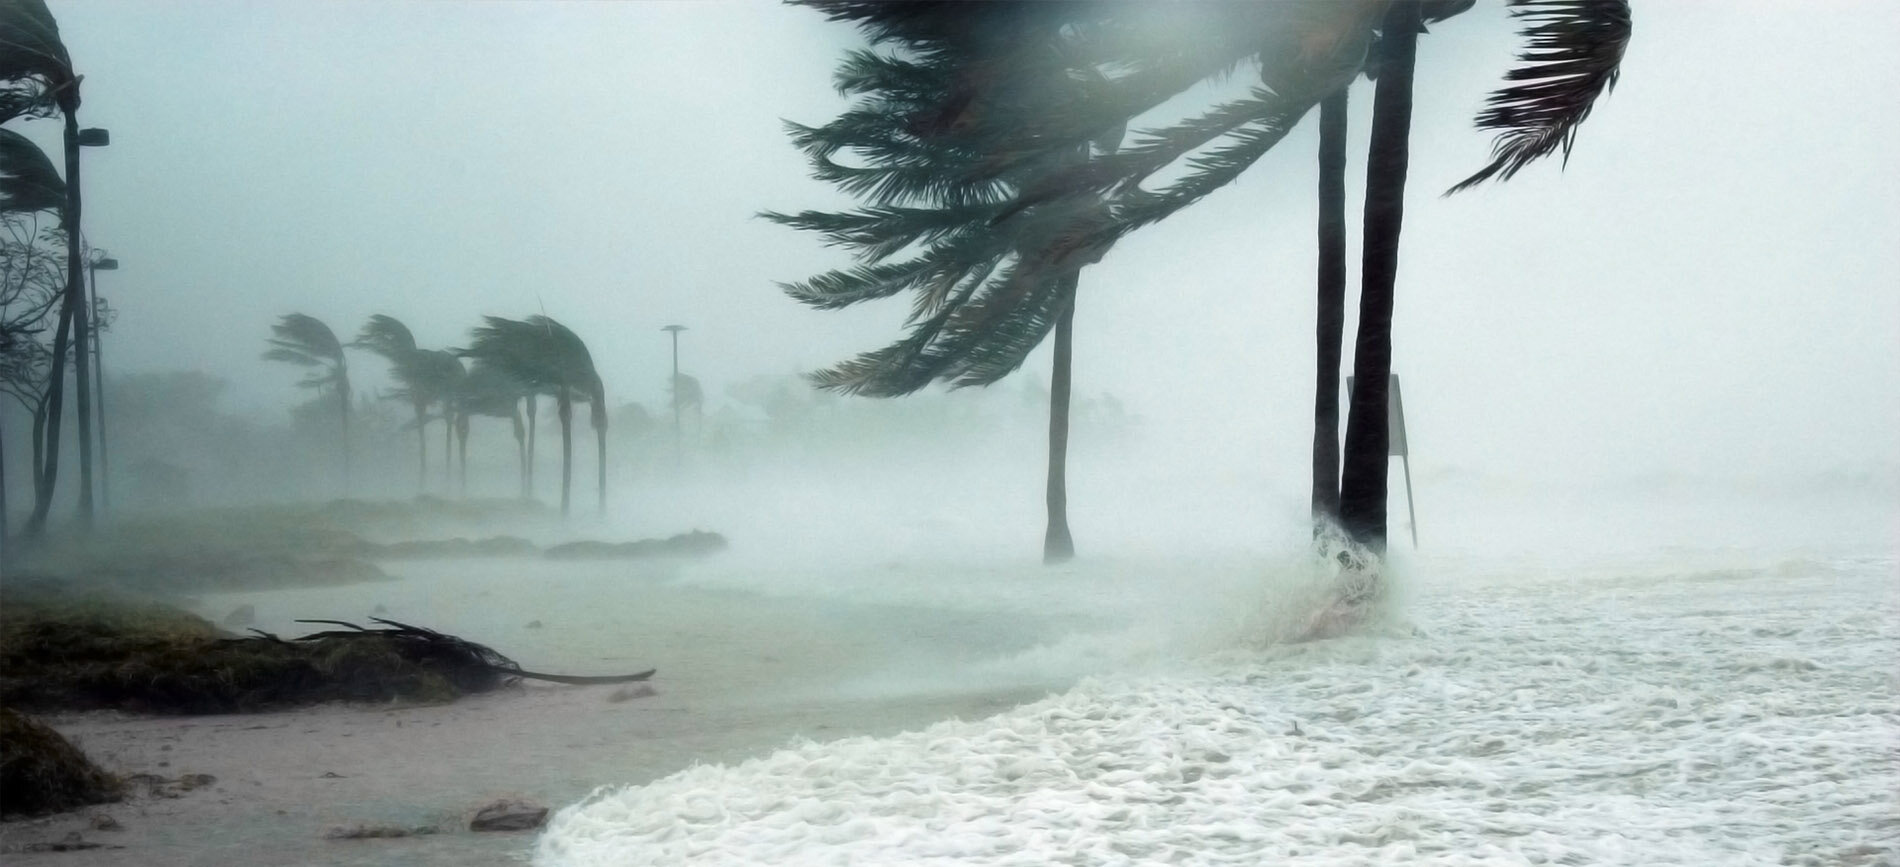 Palm trees on a beach during a hurricane.